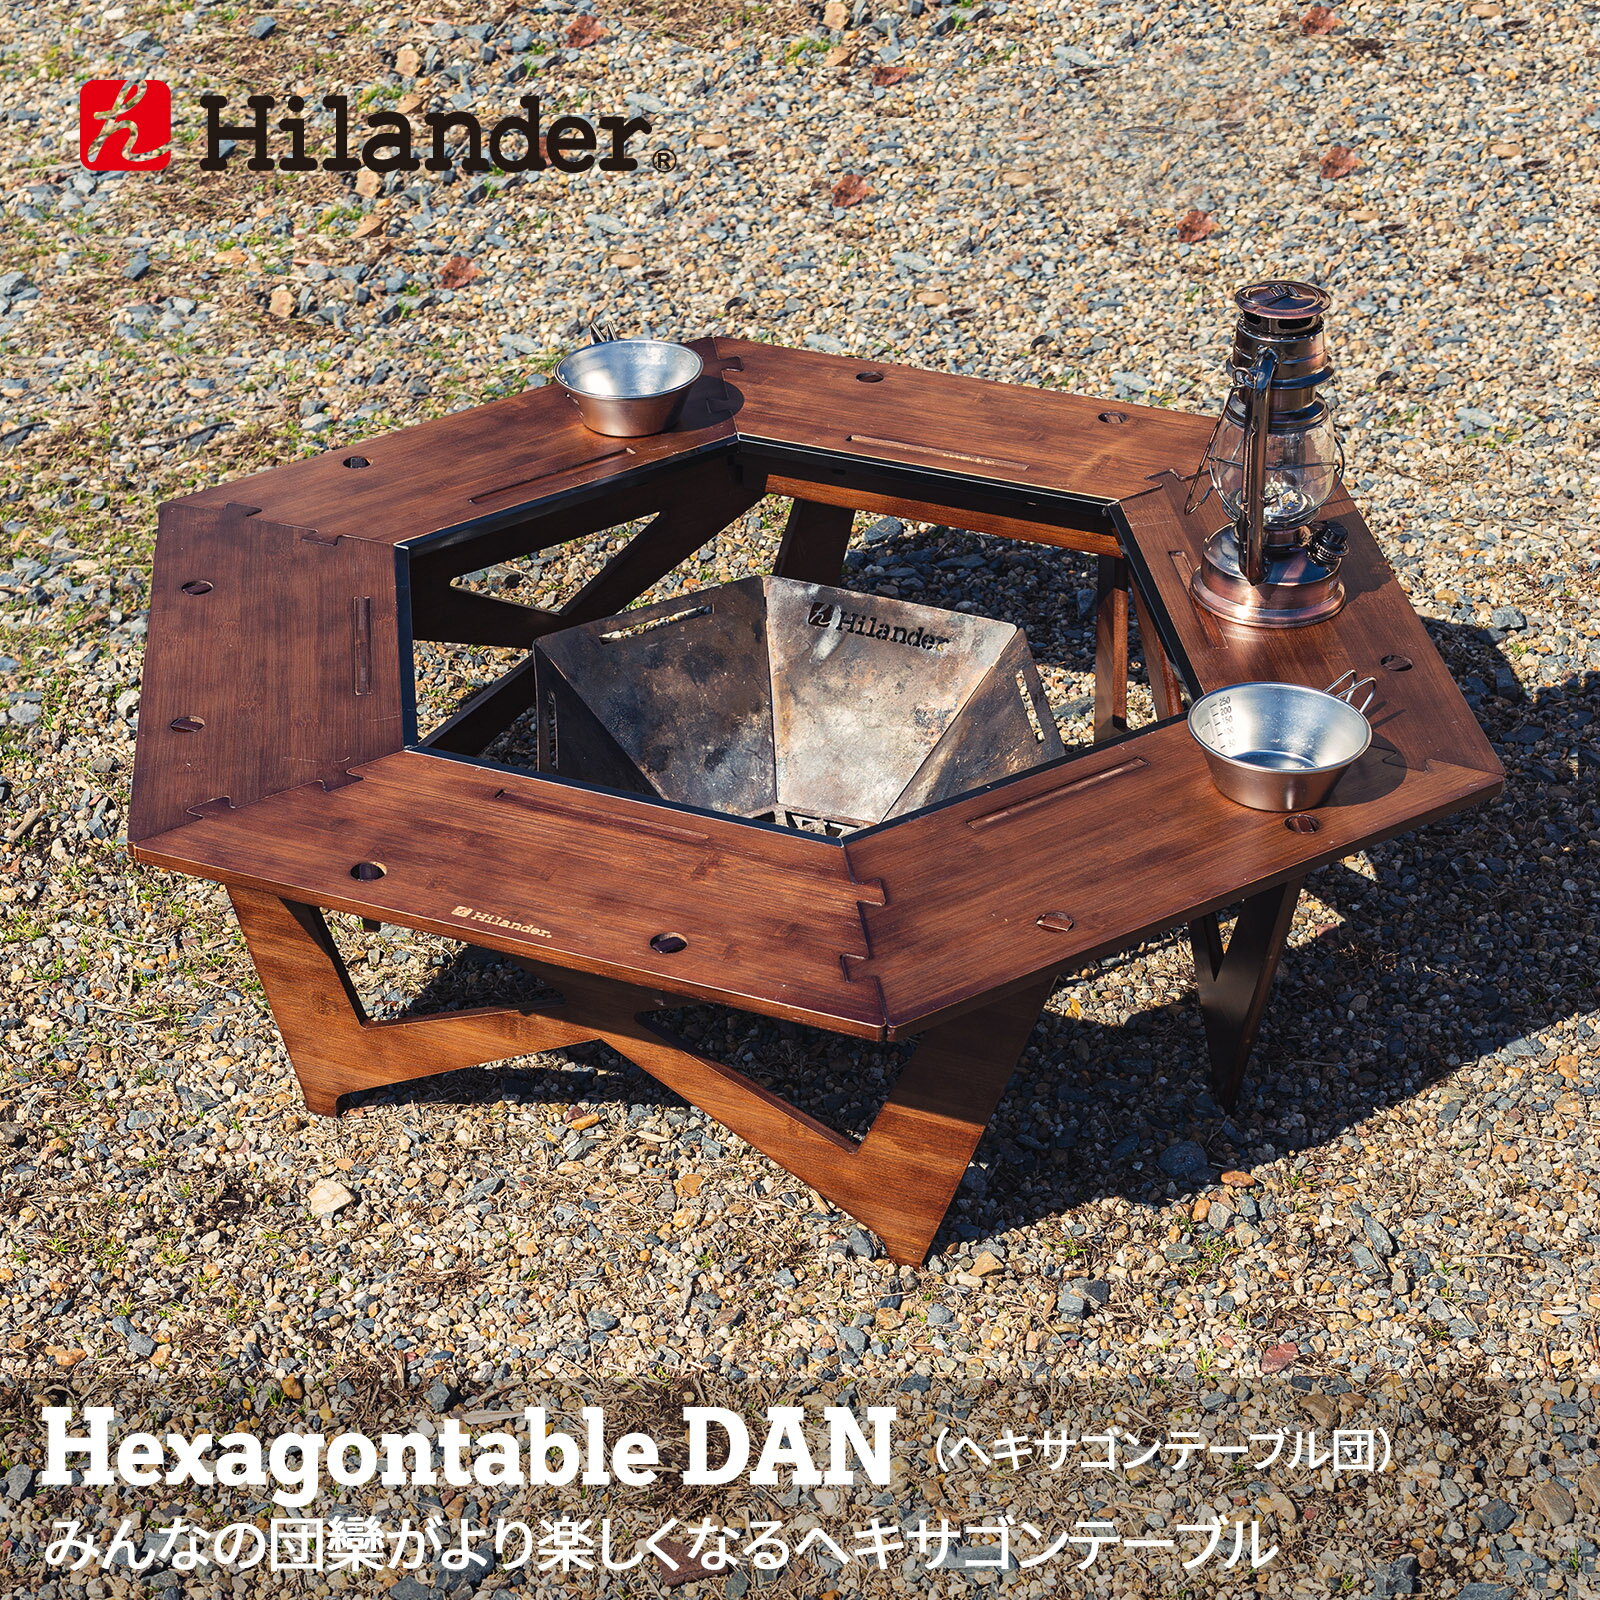 Hilander(ハイランダー) ヘキサゴンテーブル DAN アウトドアテーブル 焚き火テーブル 囲炉裏テーブル DAN HCT-026